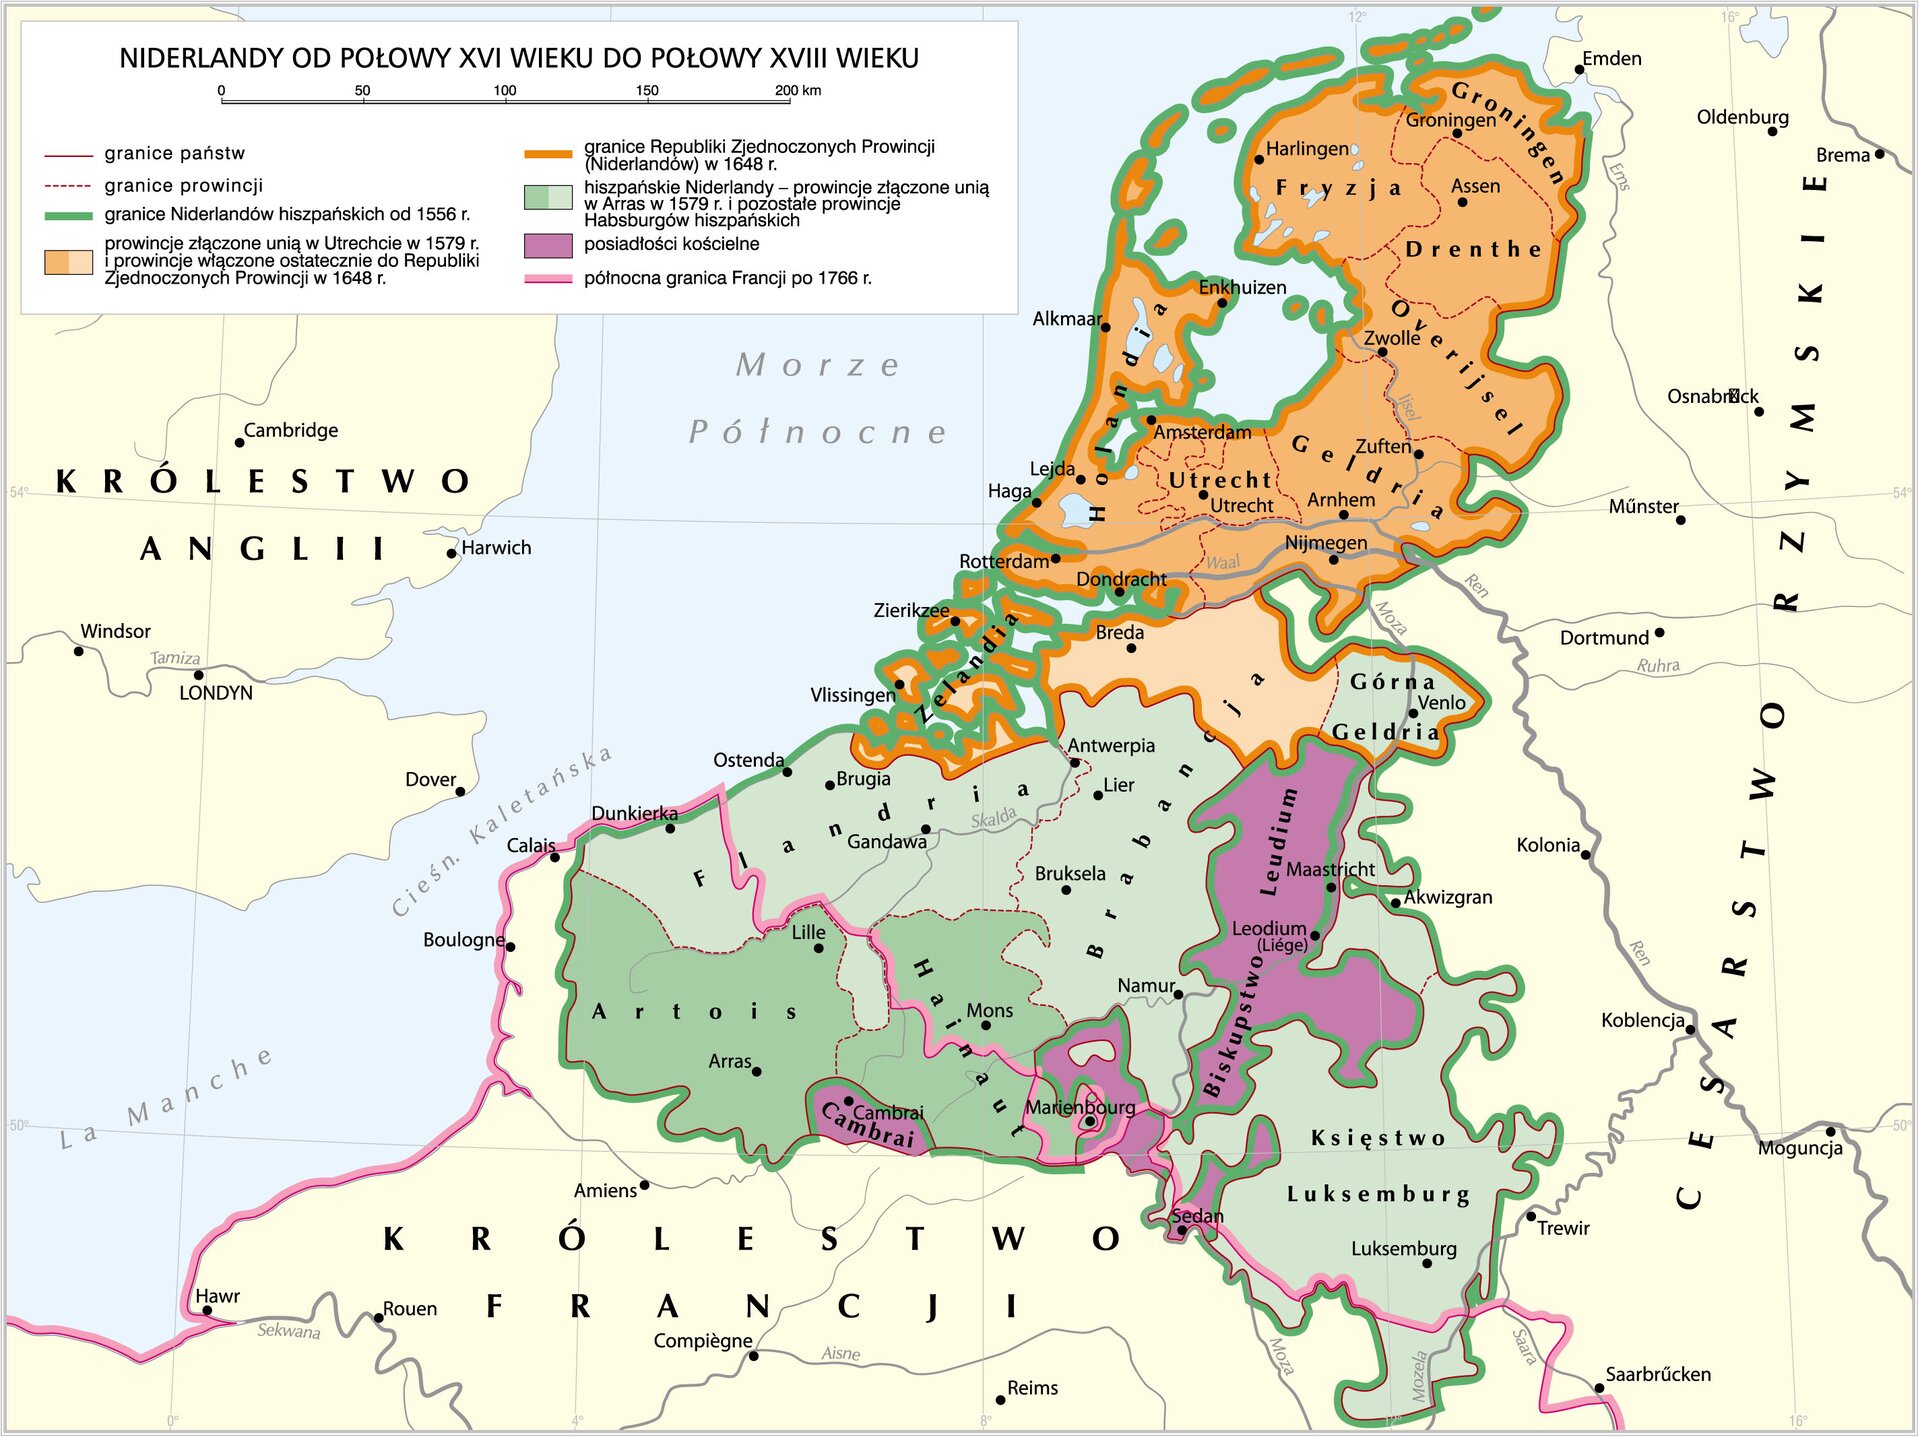 Mapa przedstawia Niderlandy od połowy piętnastego wieku do połowy osiemnastego wieku.  Niderlandy Hiszpańskie obejmowały obszar dzisiejszej Belgii, Niderlandów i Luksemburga.  W 1579 roku unią w Ultrechcie zostały połączone Holandia, Zelandia, Fryzja, Groningen, Drenthe, Overijsel, Geldria, Ulrecht i północna część Brabancji. Wszystkie te prowincje wraz z Górną Geldrią utworzyły i zostały włączone do Republiki Zjednoczonych Prowincji w 1648 roku.  Hiszpańskie Niderlandy czyli prowincje złączone unią w Arras w 1579 roku obejmowały Flandrię, Brabancję, Hainaut, Artois, Górną Geldrię oraz Księstwo Luksemburgu.  Do posiadłości kościoła należała Cambrai, Biskupstwo Leudium oraz pewne fragmenty południowych Niderlandów Hiszpańskich.  Po 1766 roku północna granica Francji przebiegała przez Flandrię, Hainaut i południowe fragmenty Luksemburga. 